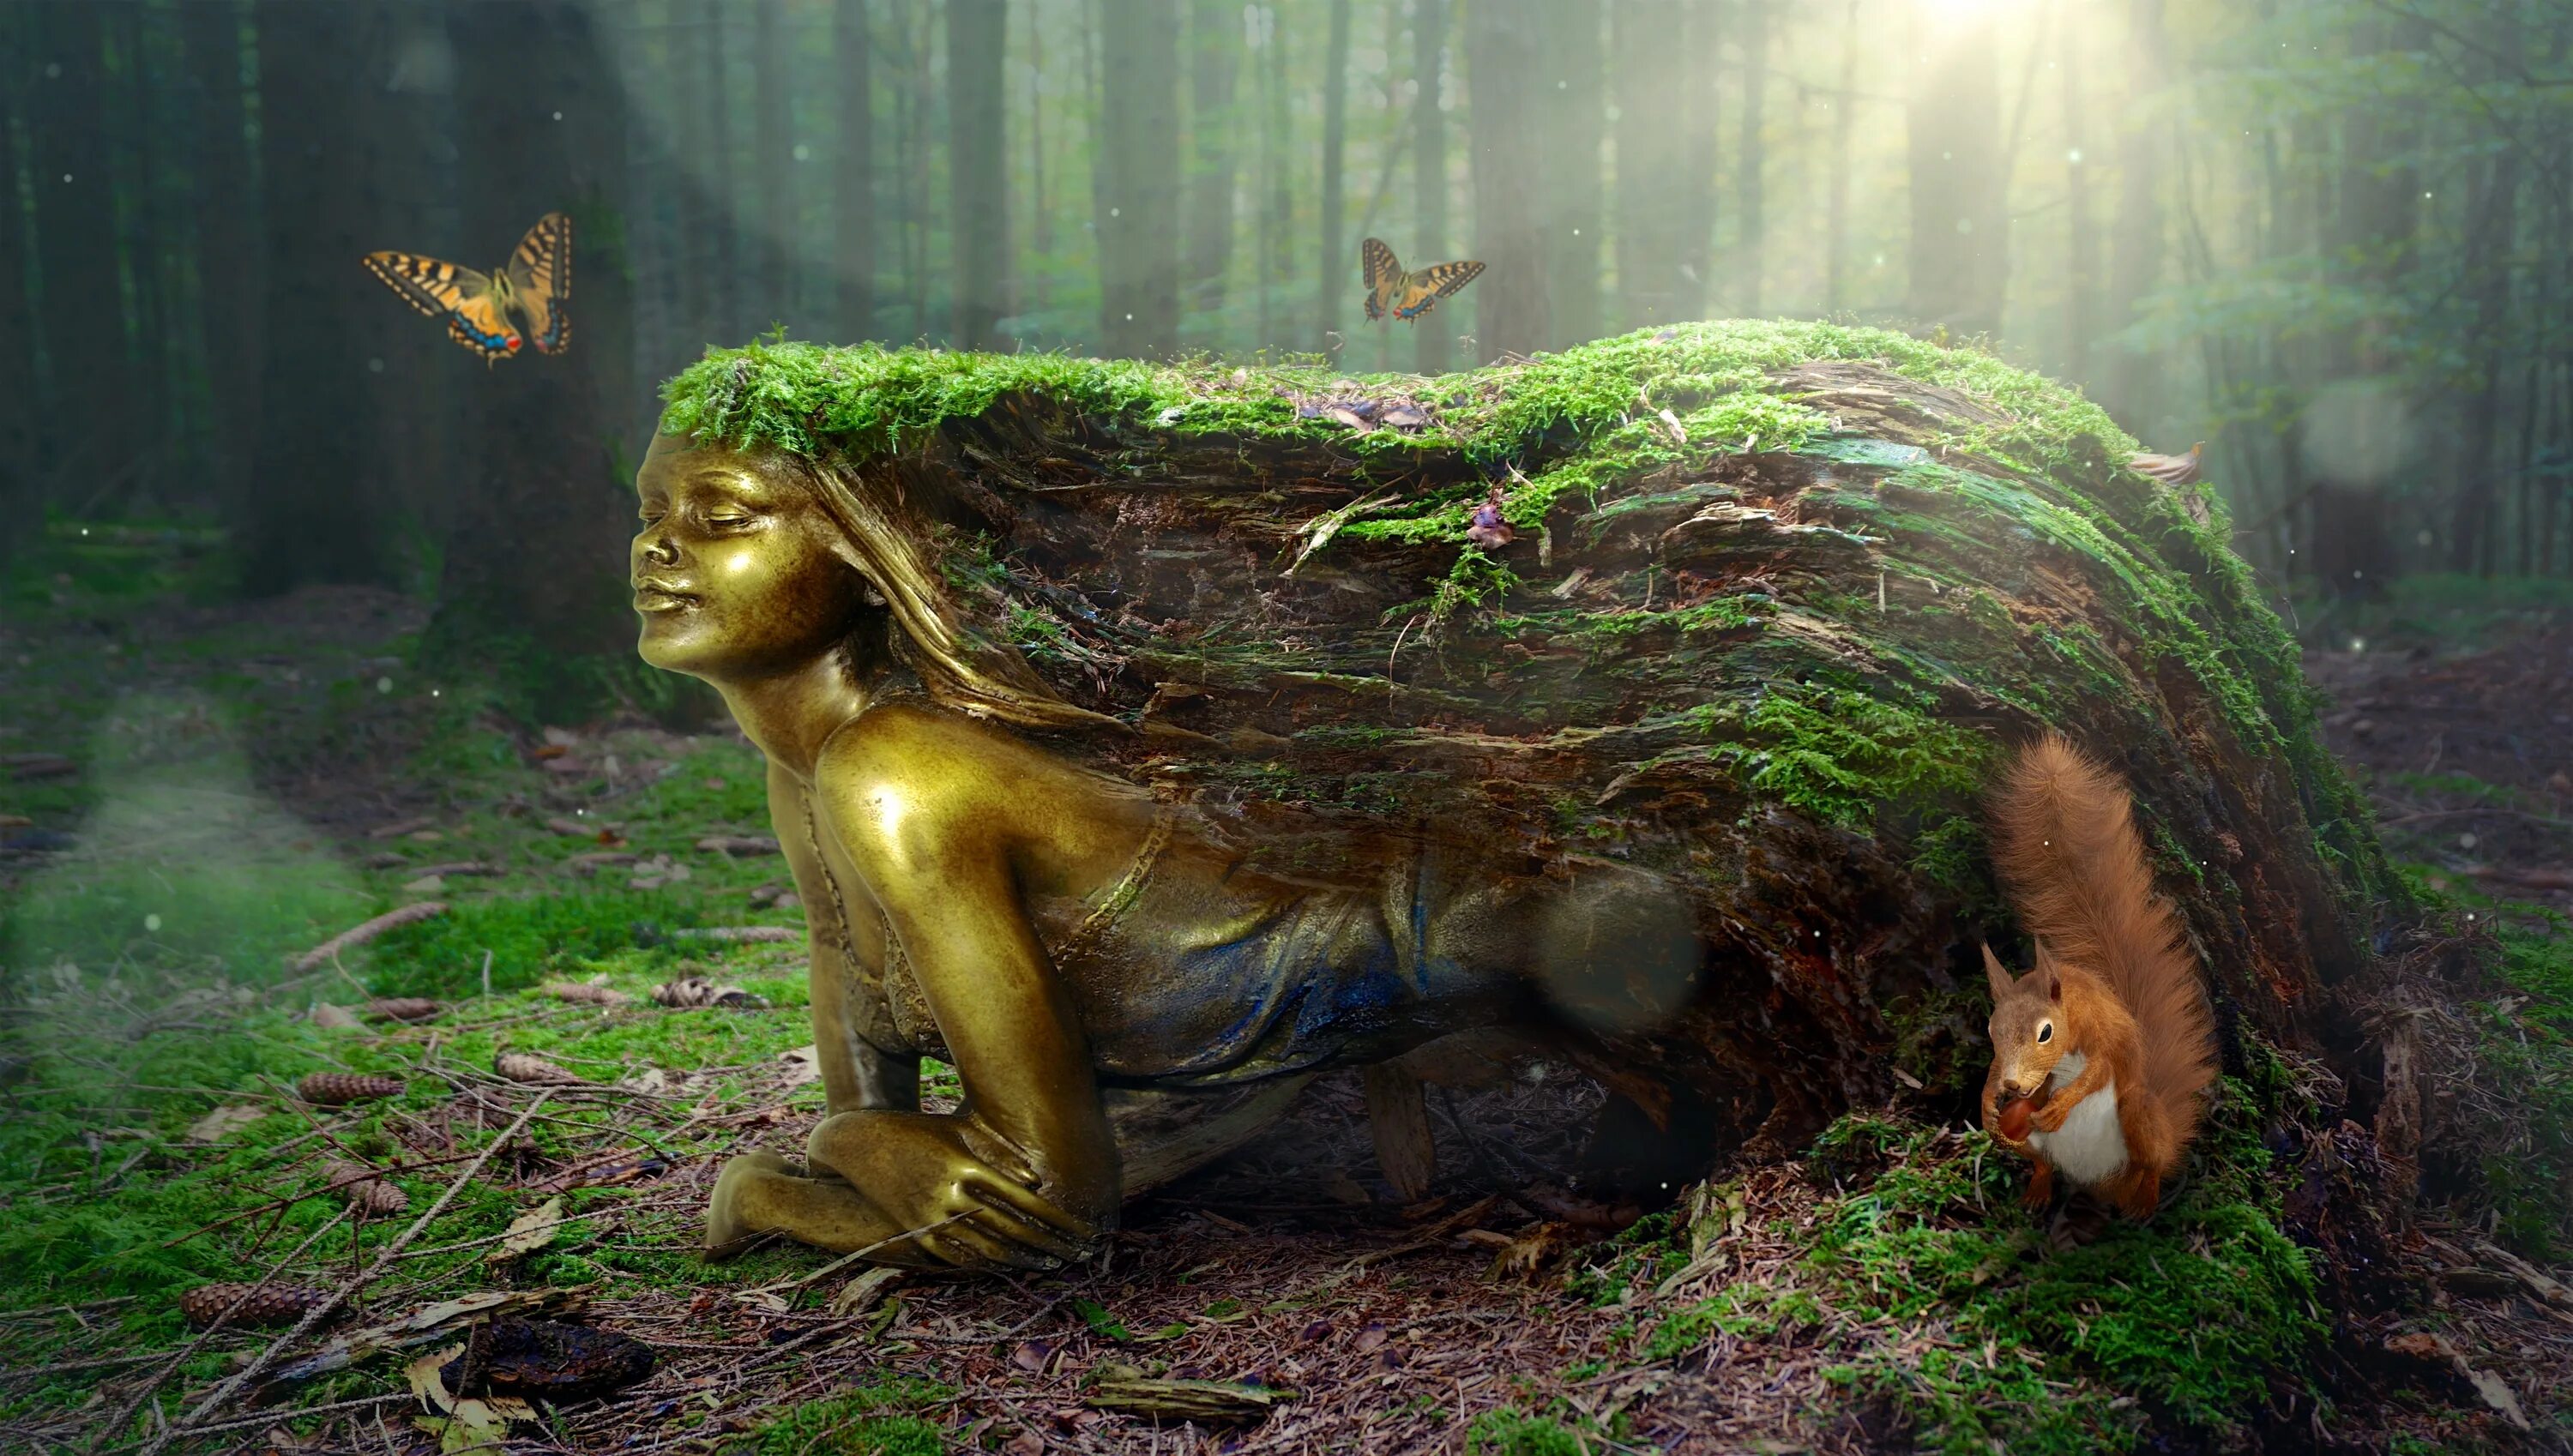 Йорд богиня. Лесные существа. Мифические существа в лесу. Сказочные существа леса. Материнство природы